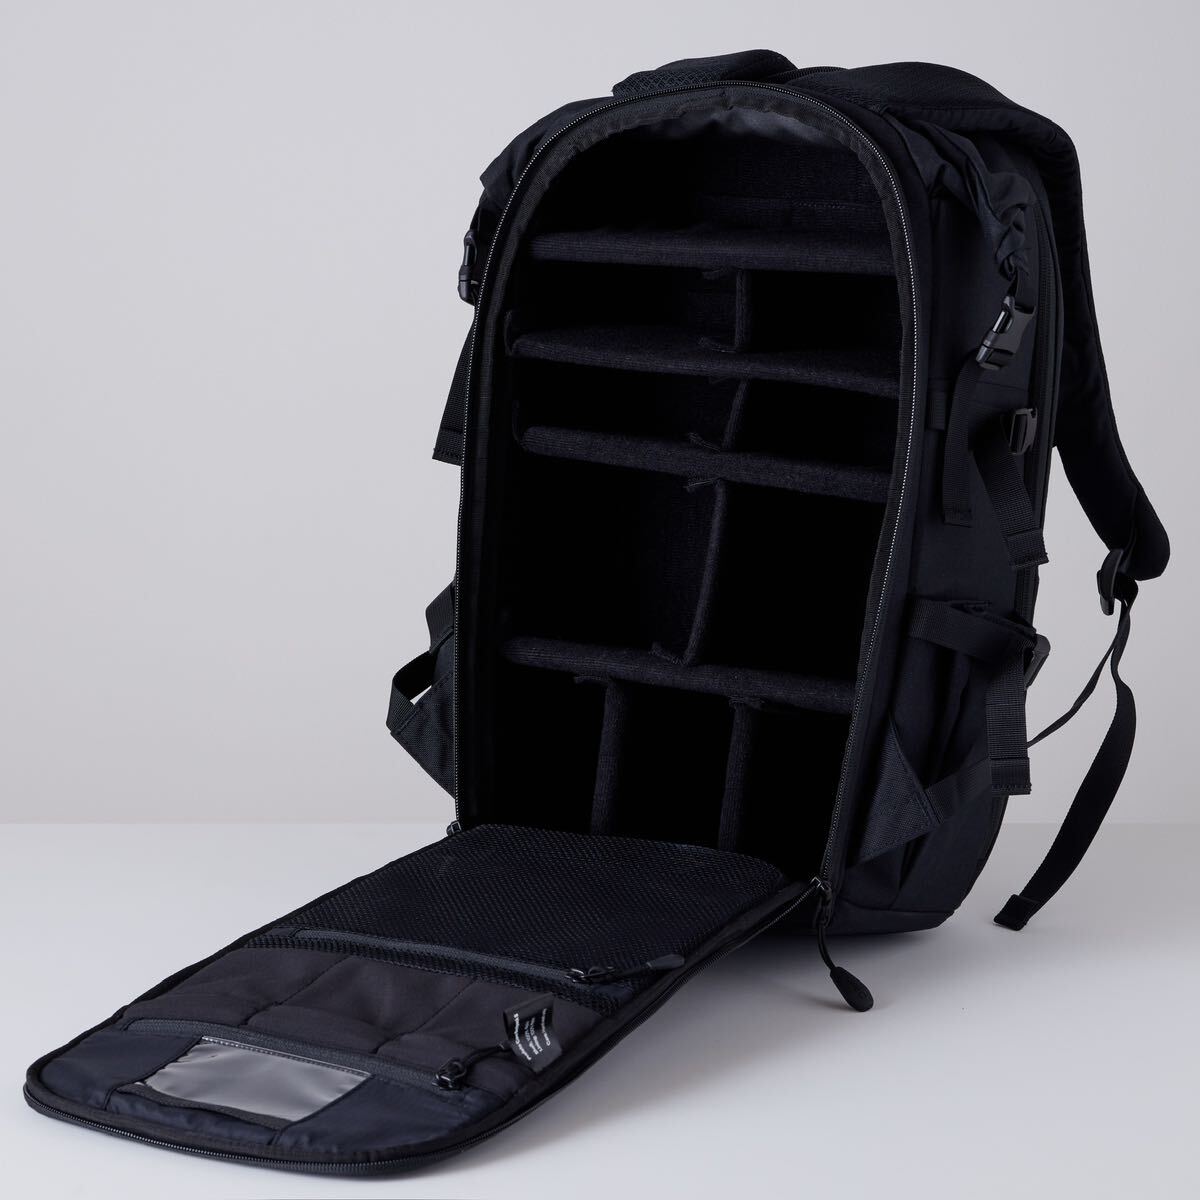 【極美品】Profoto Core Backpack S プロフォト コア バックパック 定価41,140円【送料無料】_背中側からアクセスするパックパックです